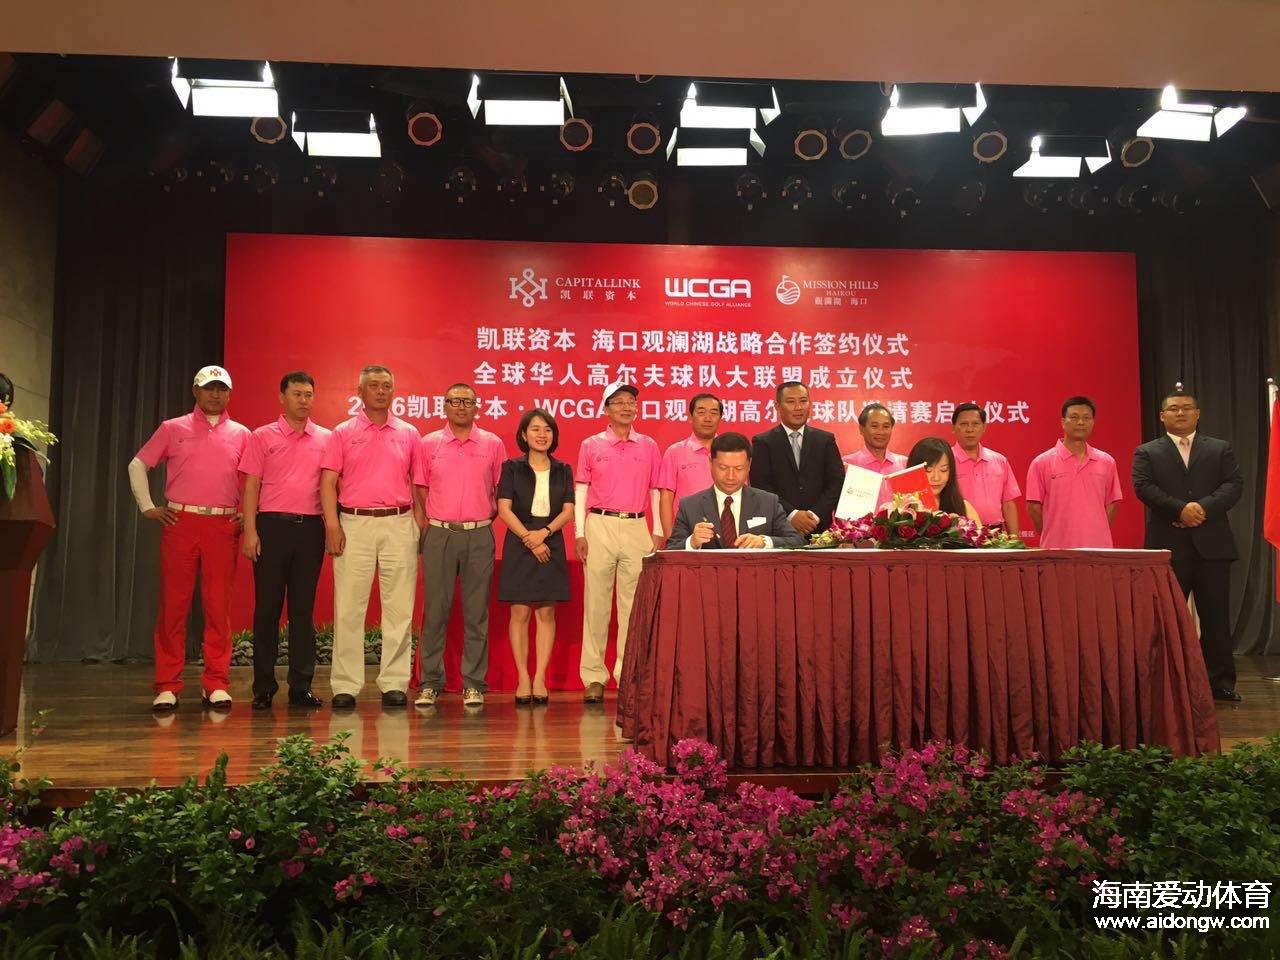 全球华人高尔夫球队大联盟(WCGA)成立在海口观澜湖举行